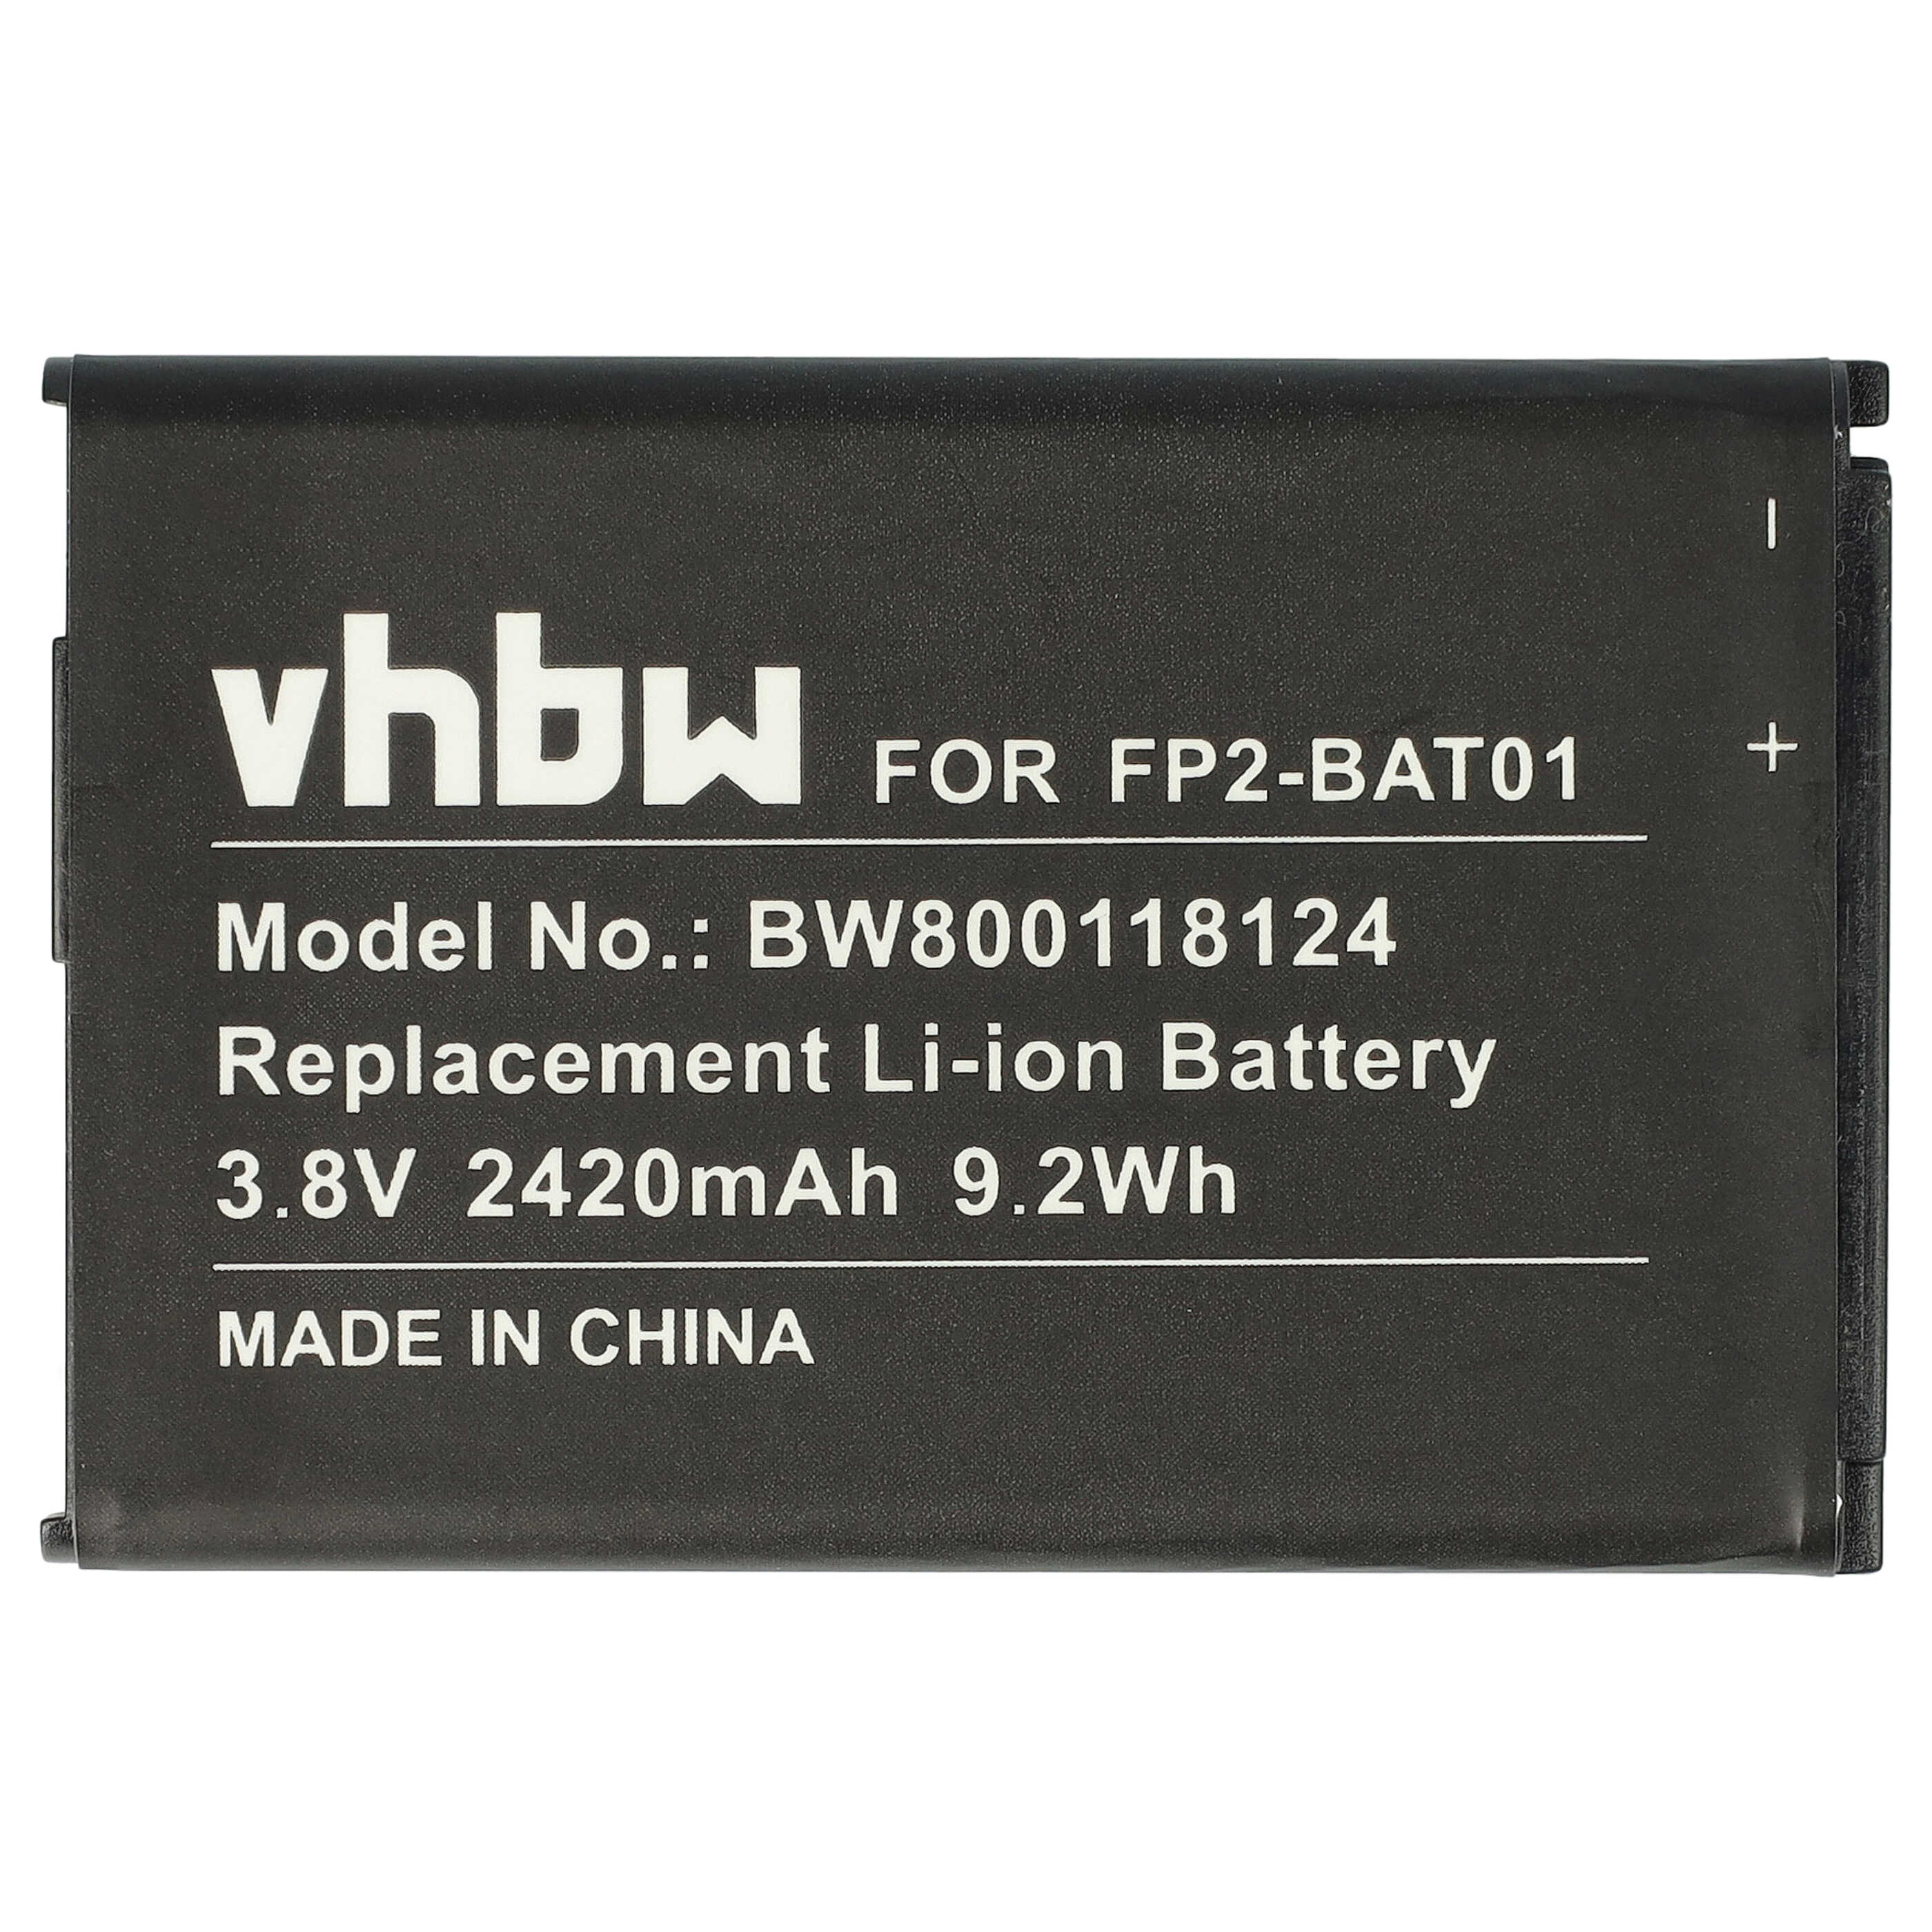 Batterie remplace Fairphone FP2-BAT01 pour téléphone portable - 2420mAh, 3,8V, Li-ion